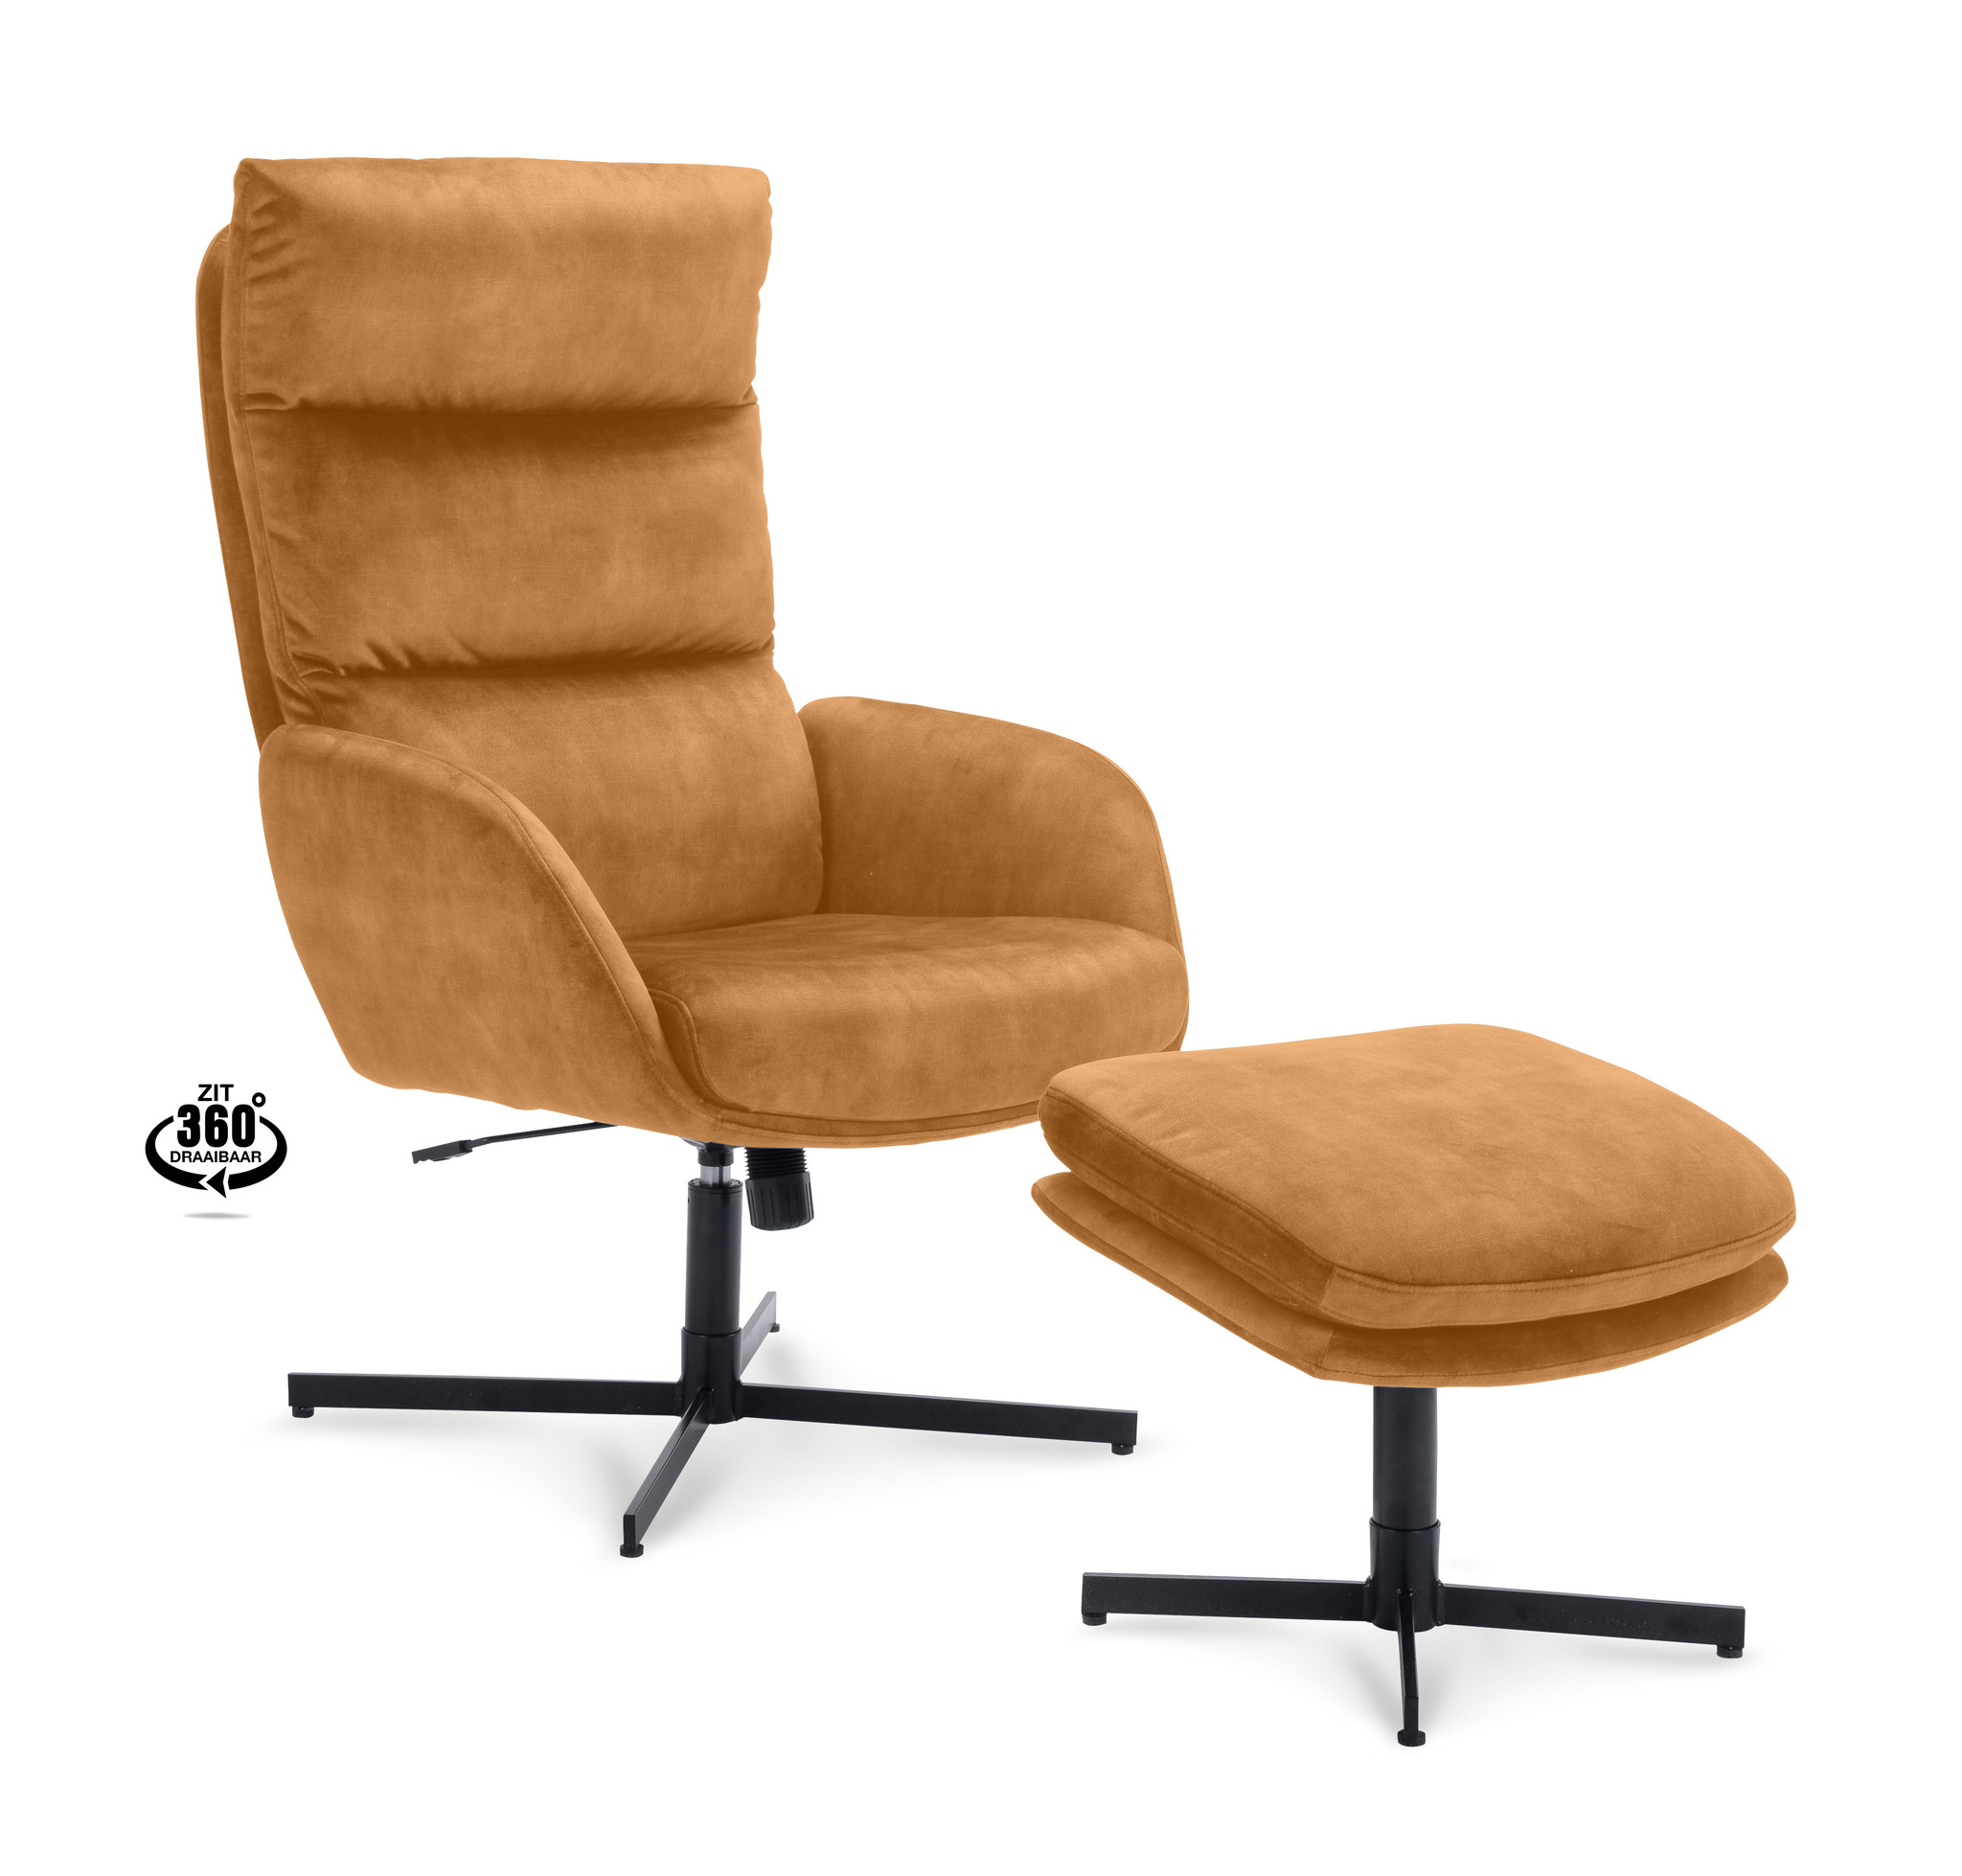 Relaxfauteuil Ruud Cognac | Groot aanbod fauteuils | gisterenvandaag.nl